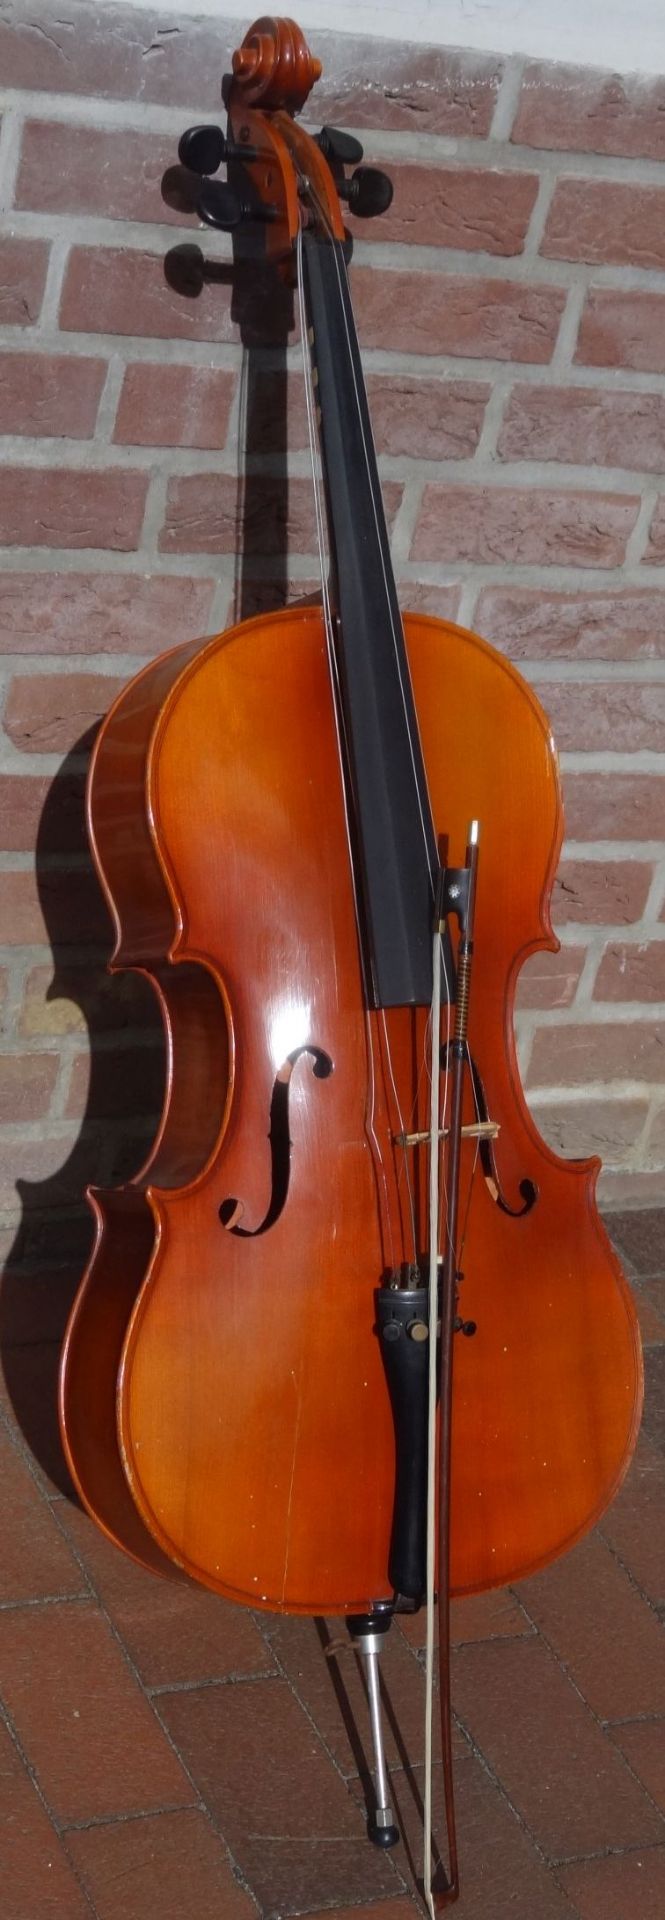 Cello mit Bogen, Alters-u. Gebrauchsspuren, H-130 cm, - Bild 2 aus 10